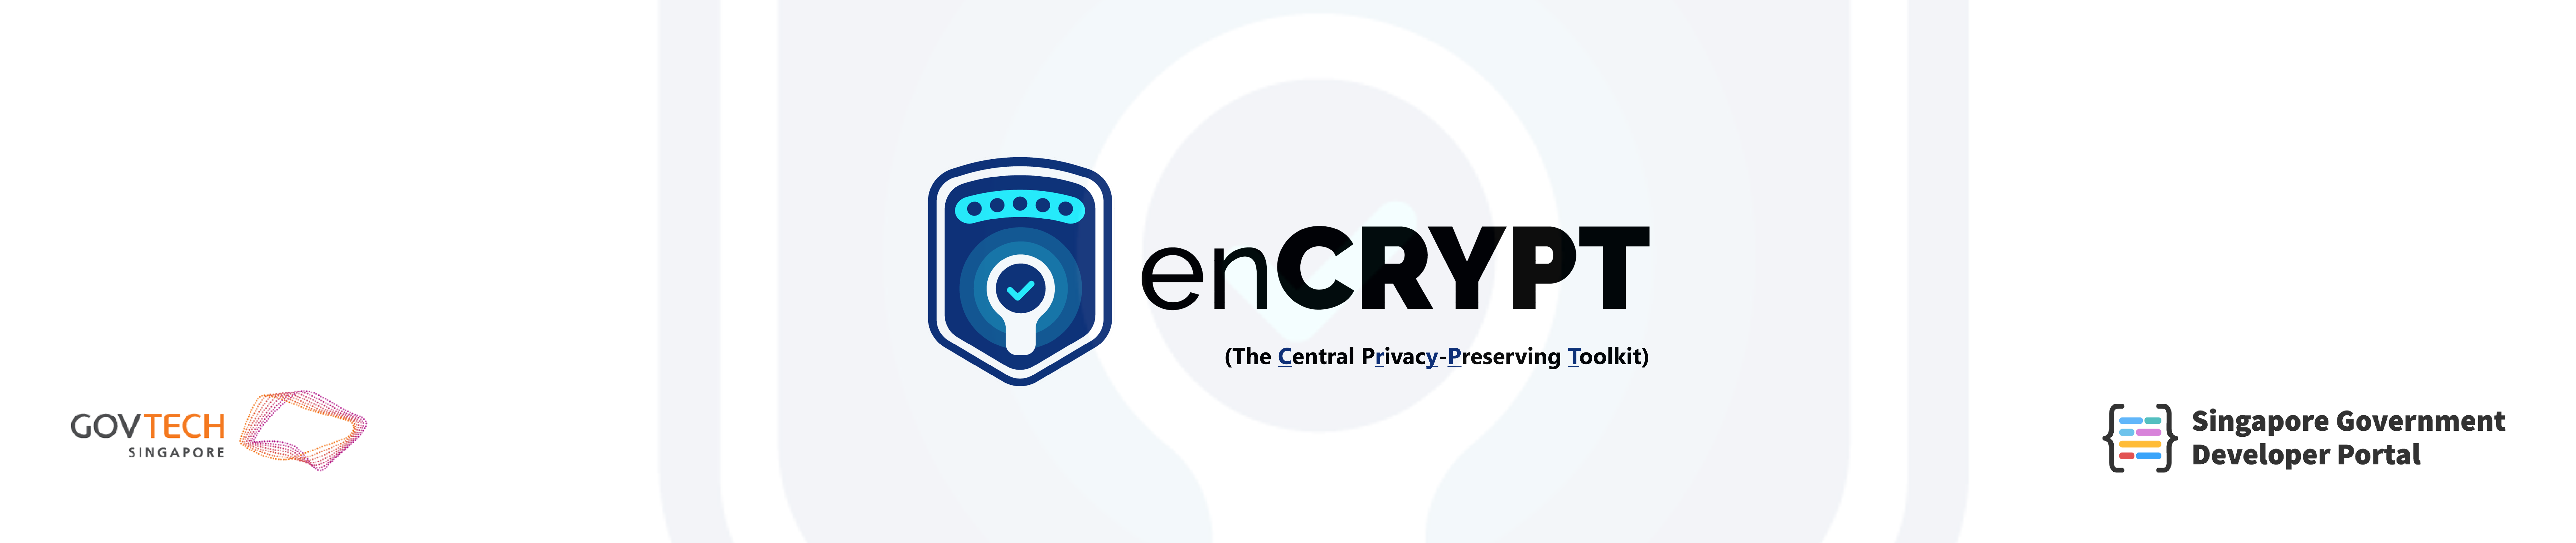 enCRYPT header banner